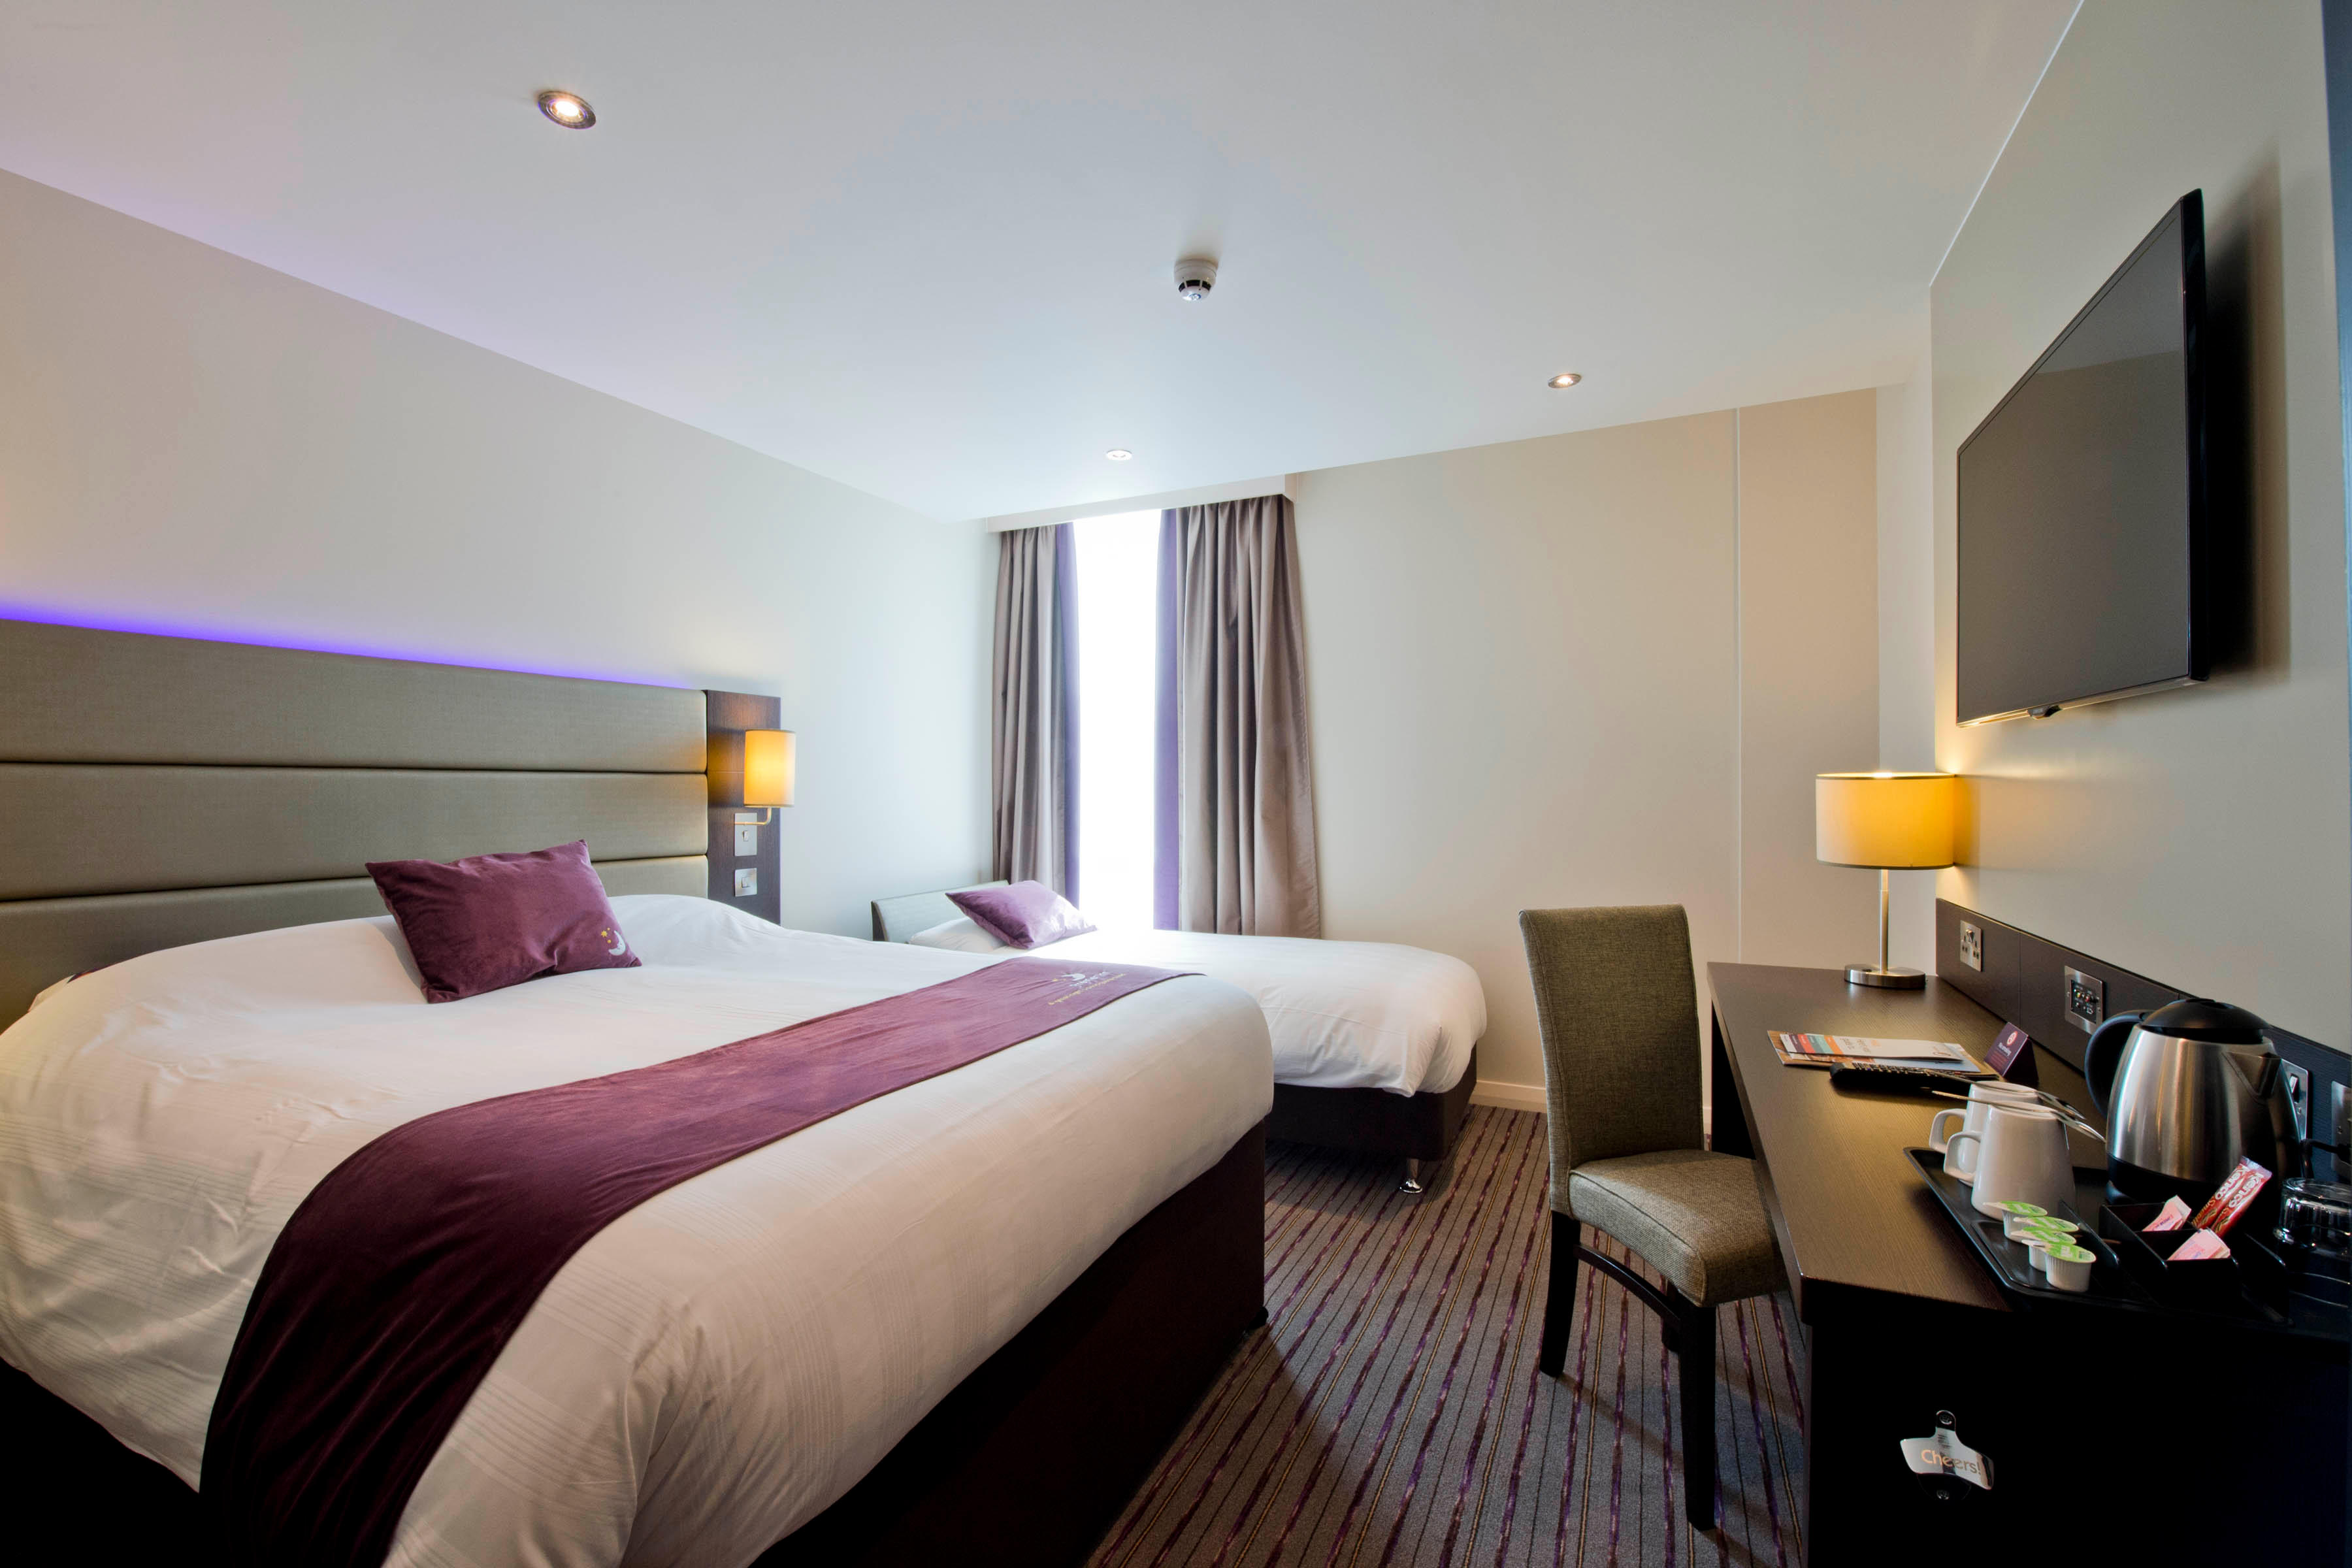 Premier Inn bedroom Premier Inn London Sidcup hotel Sidcup 03332 346539